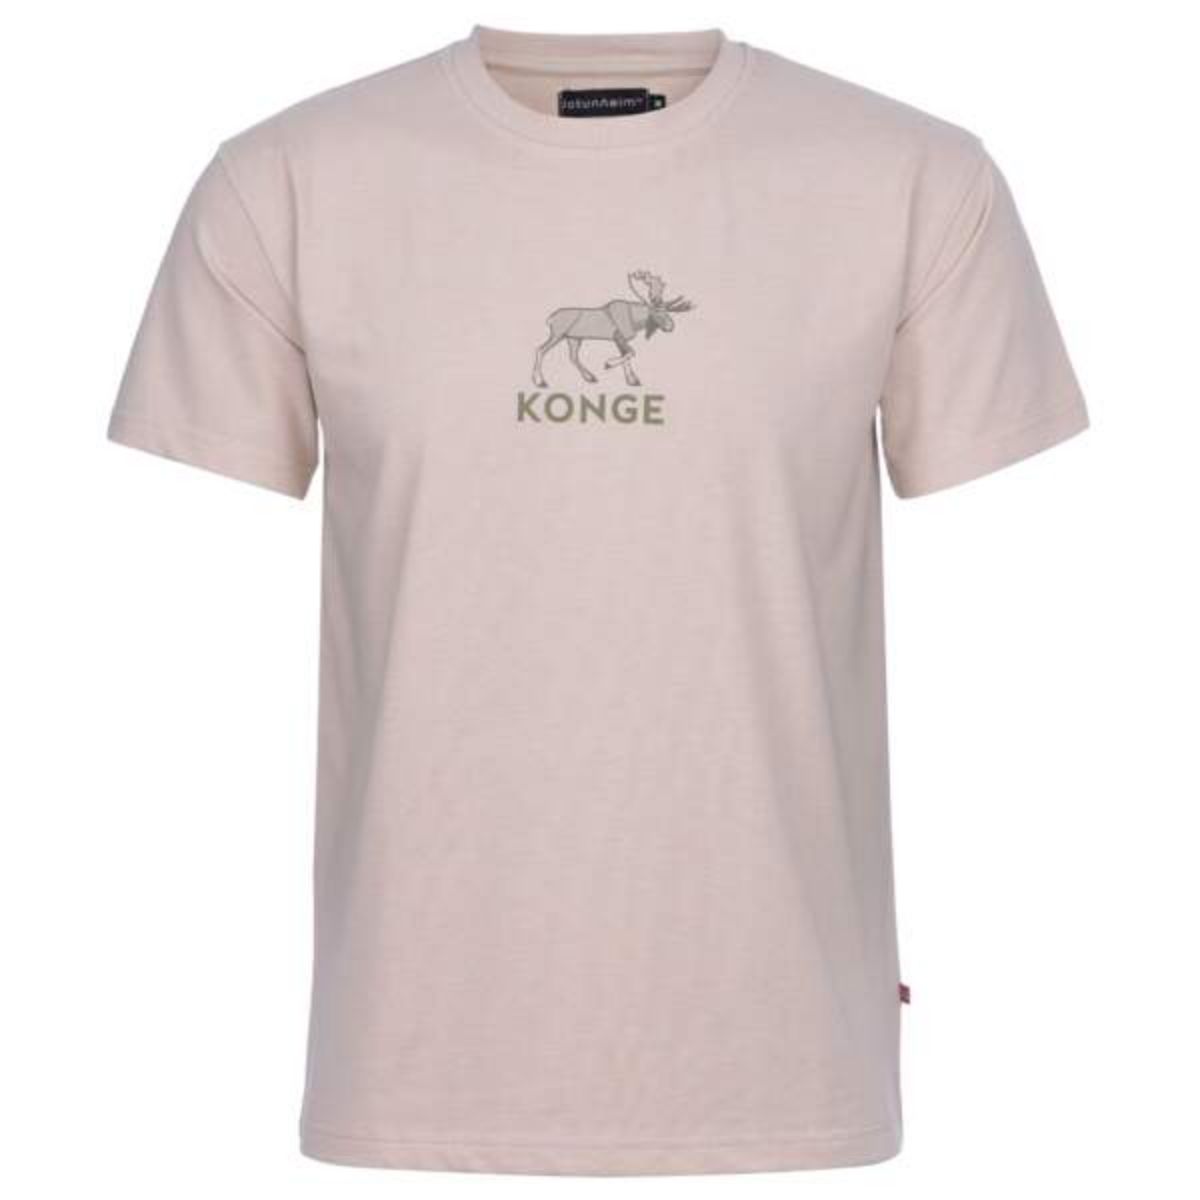 Bilde av Varde T-shirt m print "Konge"